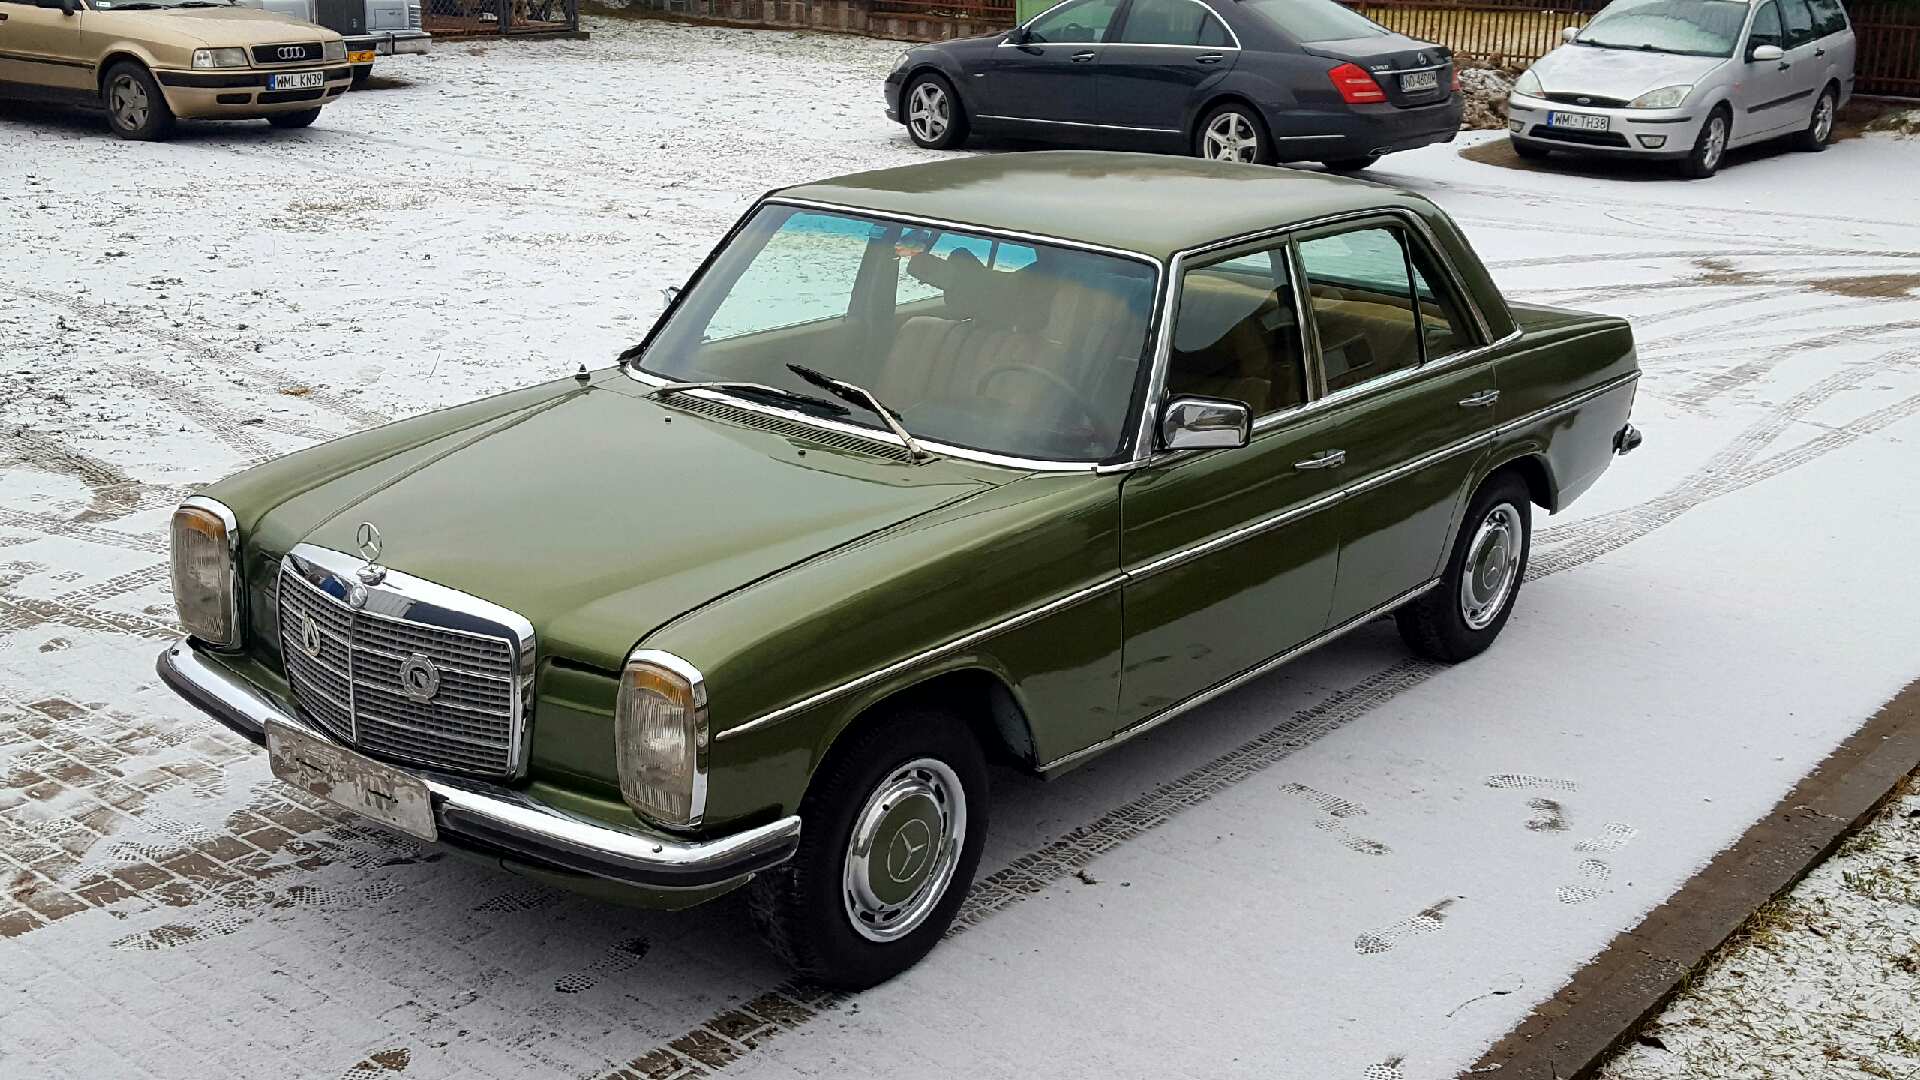 Mercedes W115 32000PLN Mława Klasykami.pl